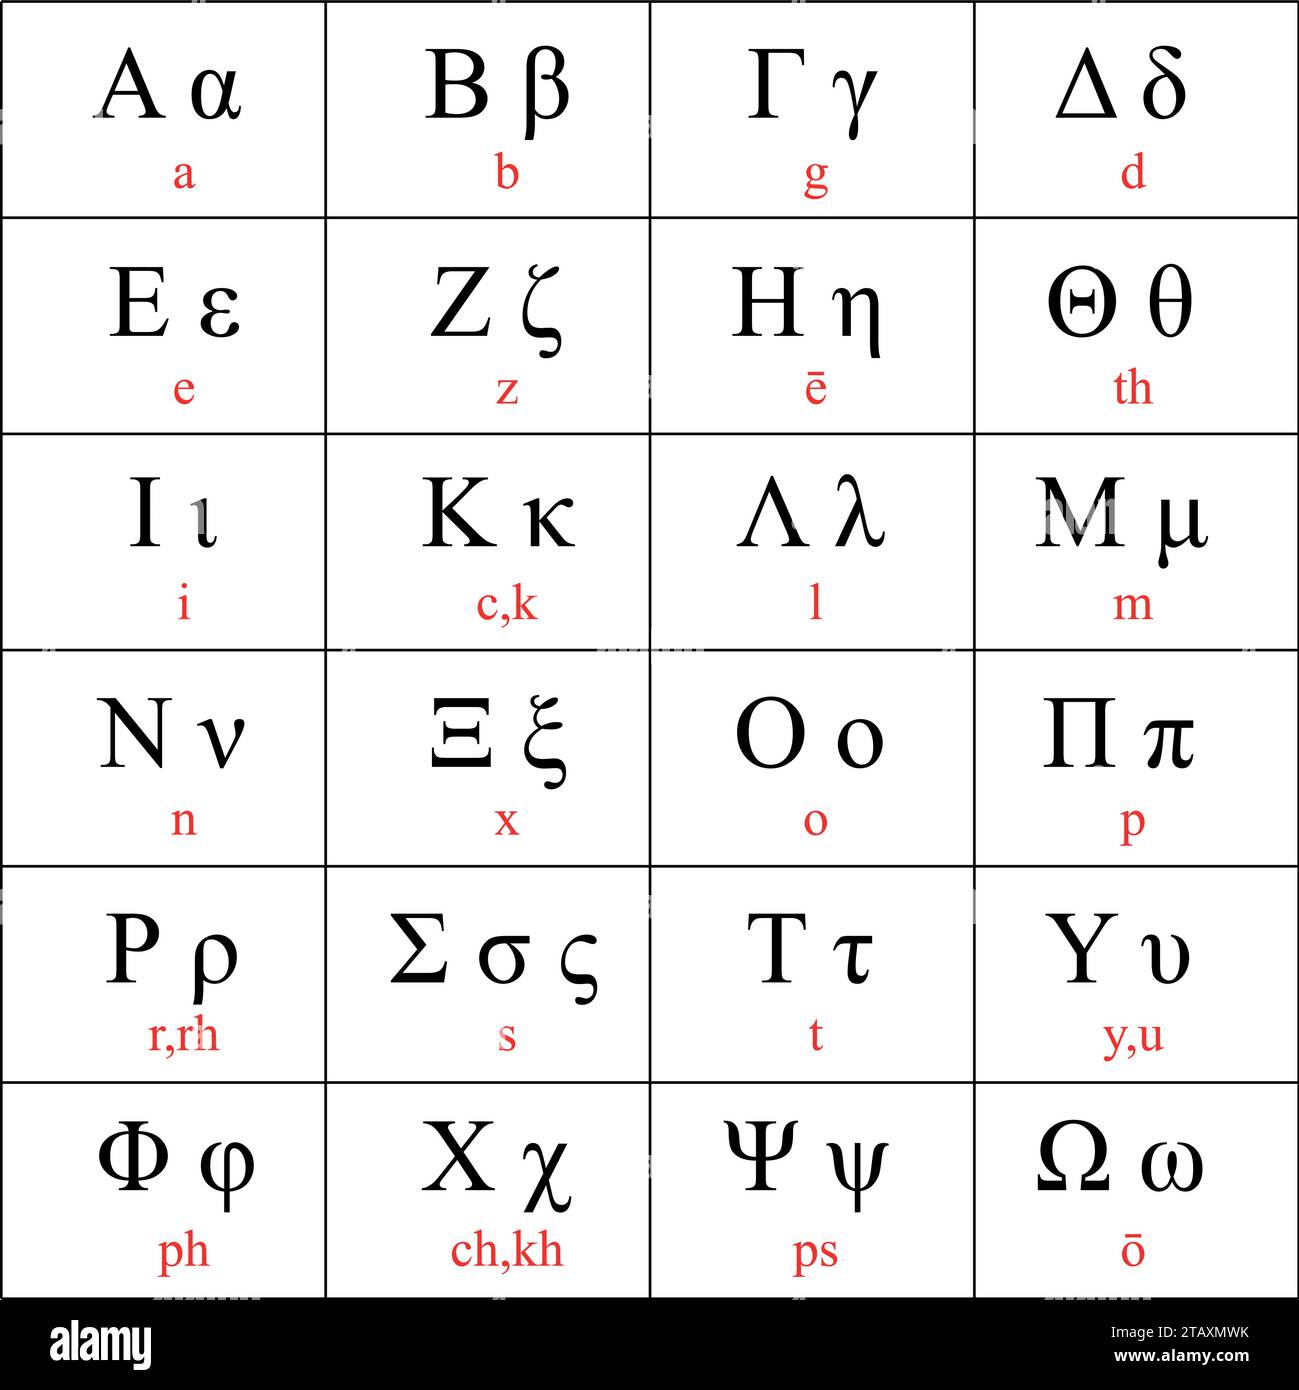 Letras del alfabeto griego con transliteración latina tradicional, ilustración vectorial Ilustración del Vector